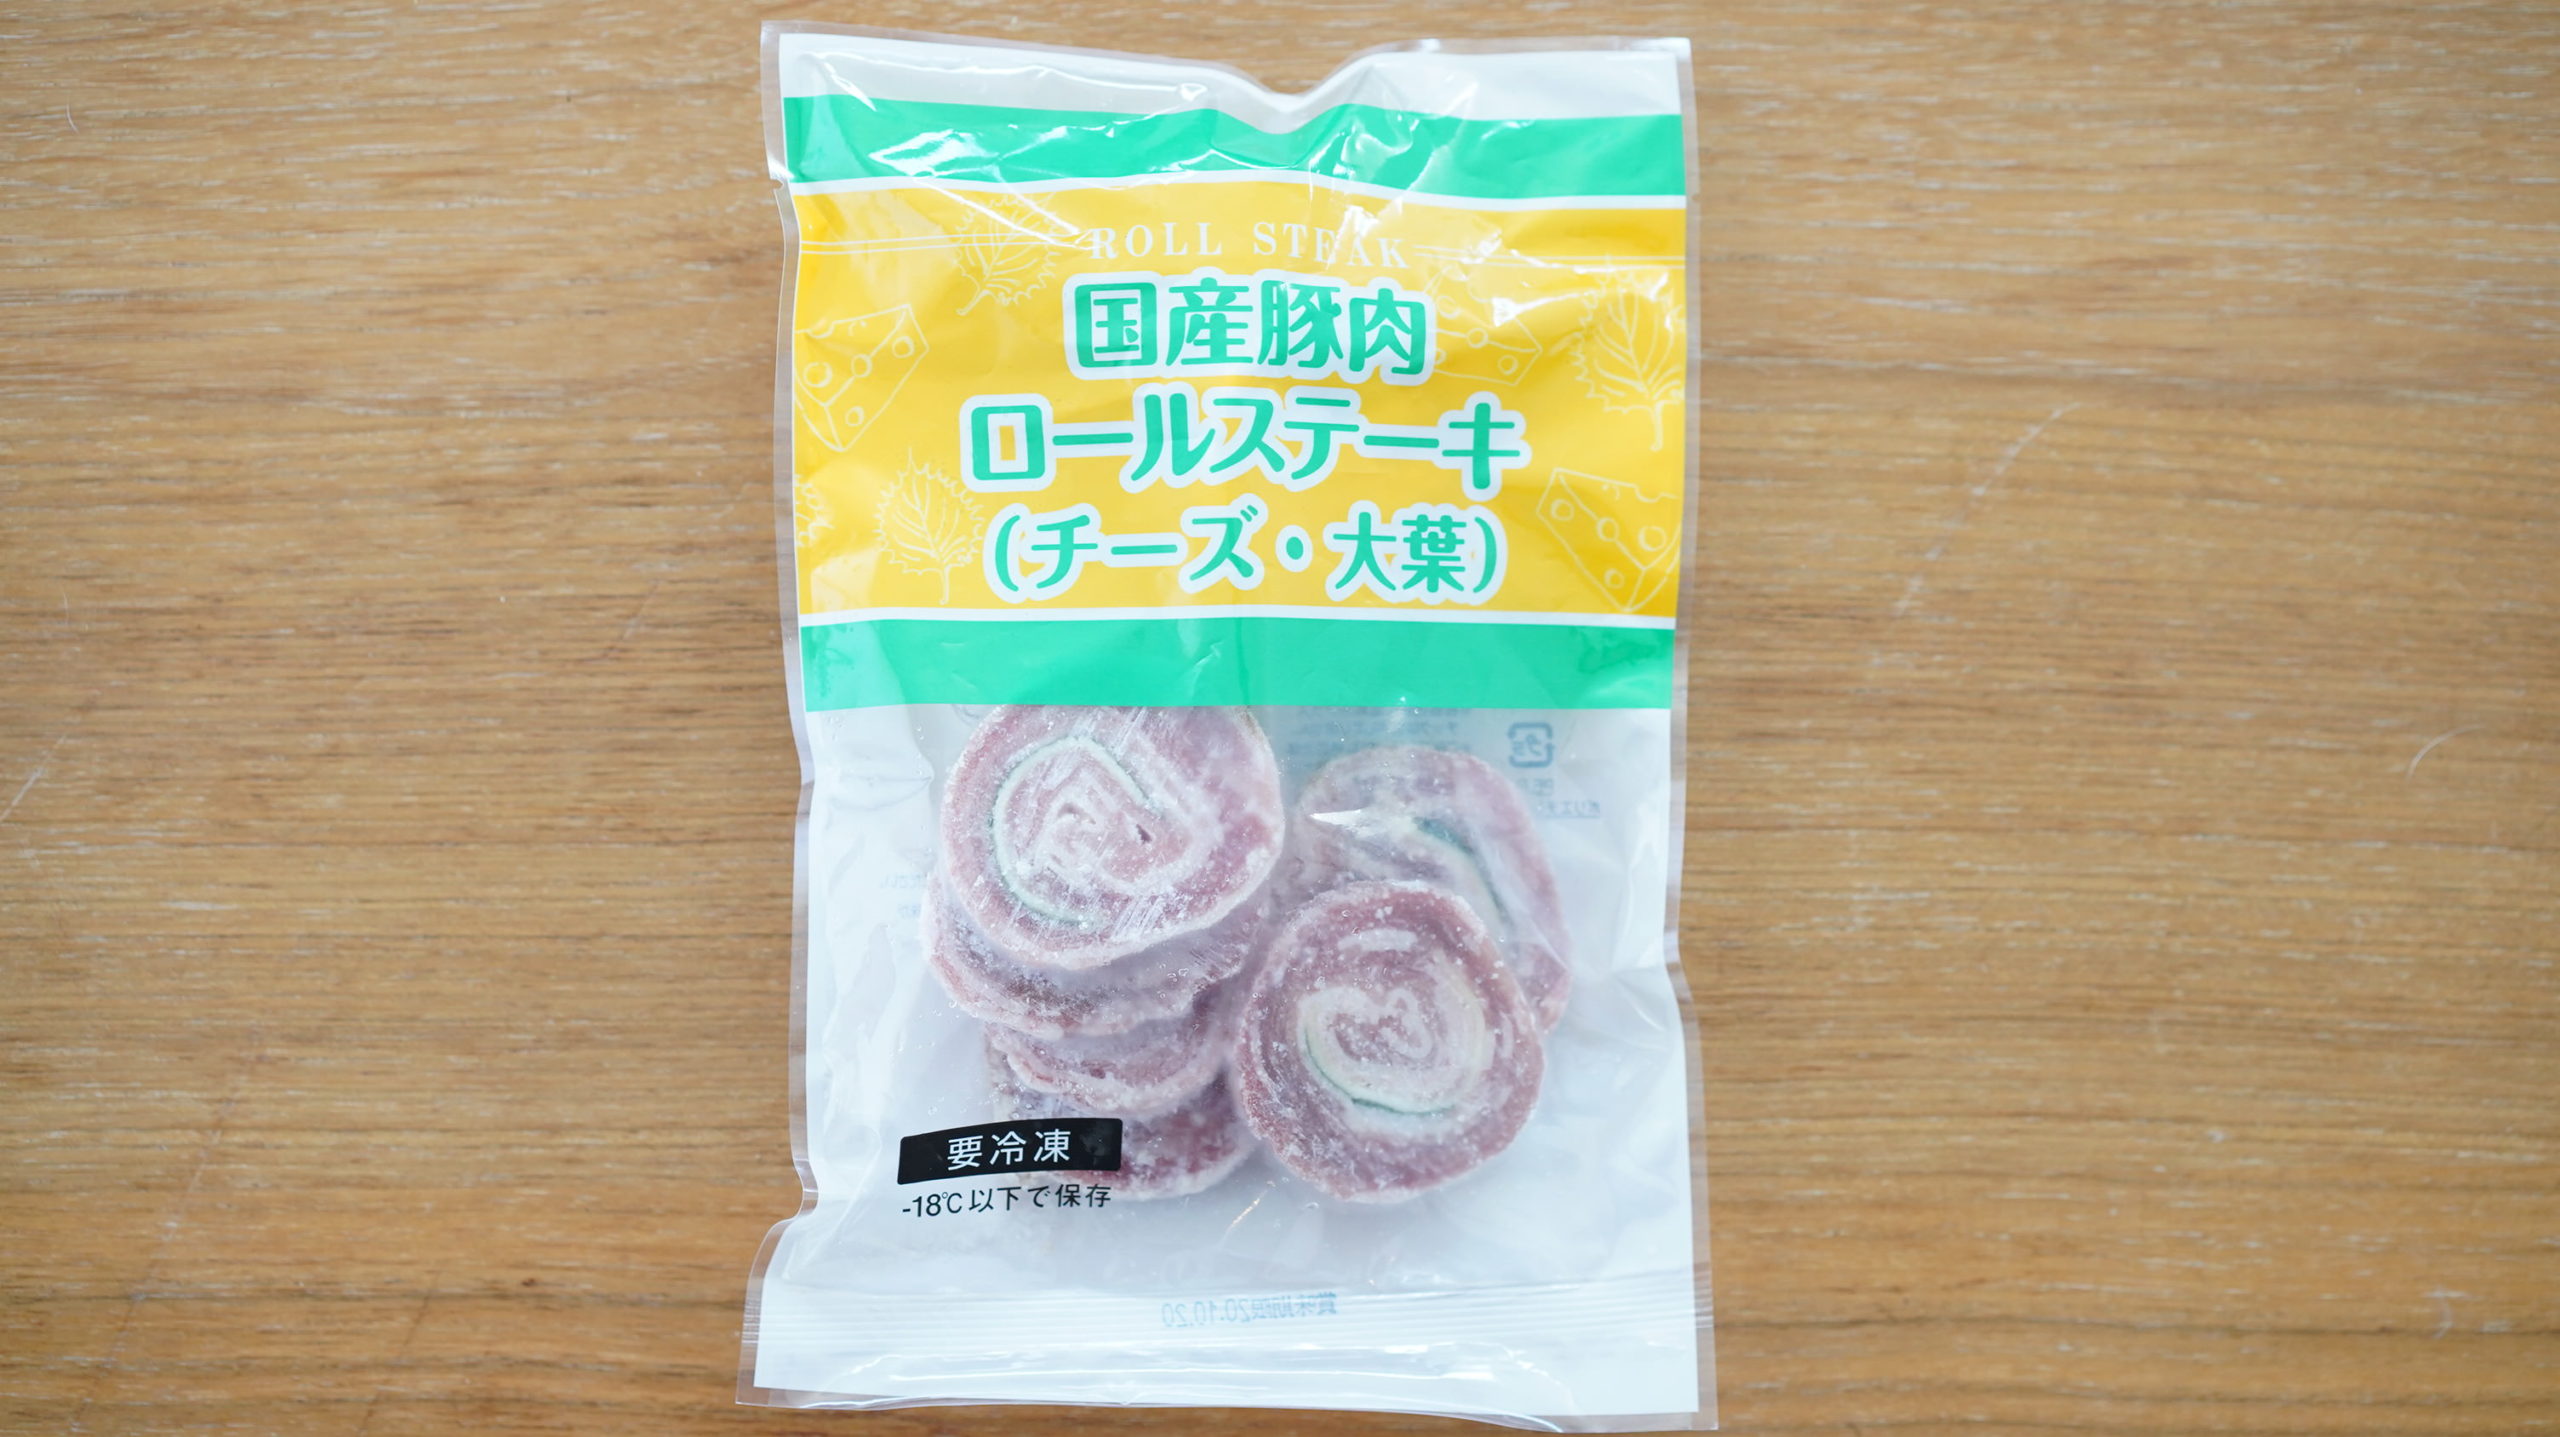 生協coop宅配の冷凍食品・ニチレイ「国産豚肉ロールステーキ（チーズ・大葉）」のパッケージ写真